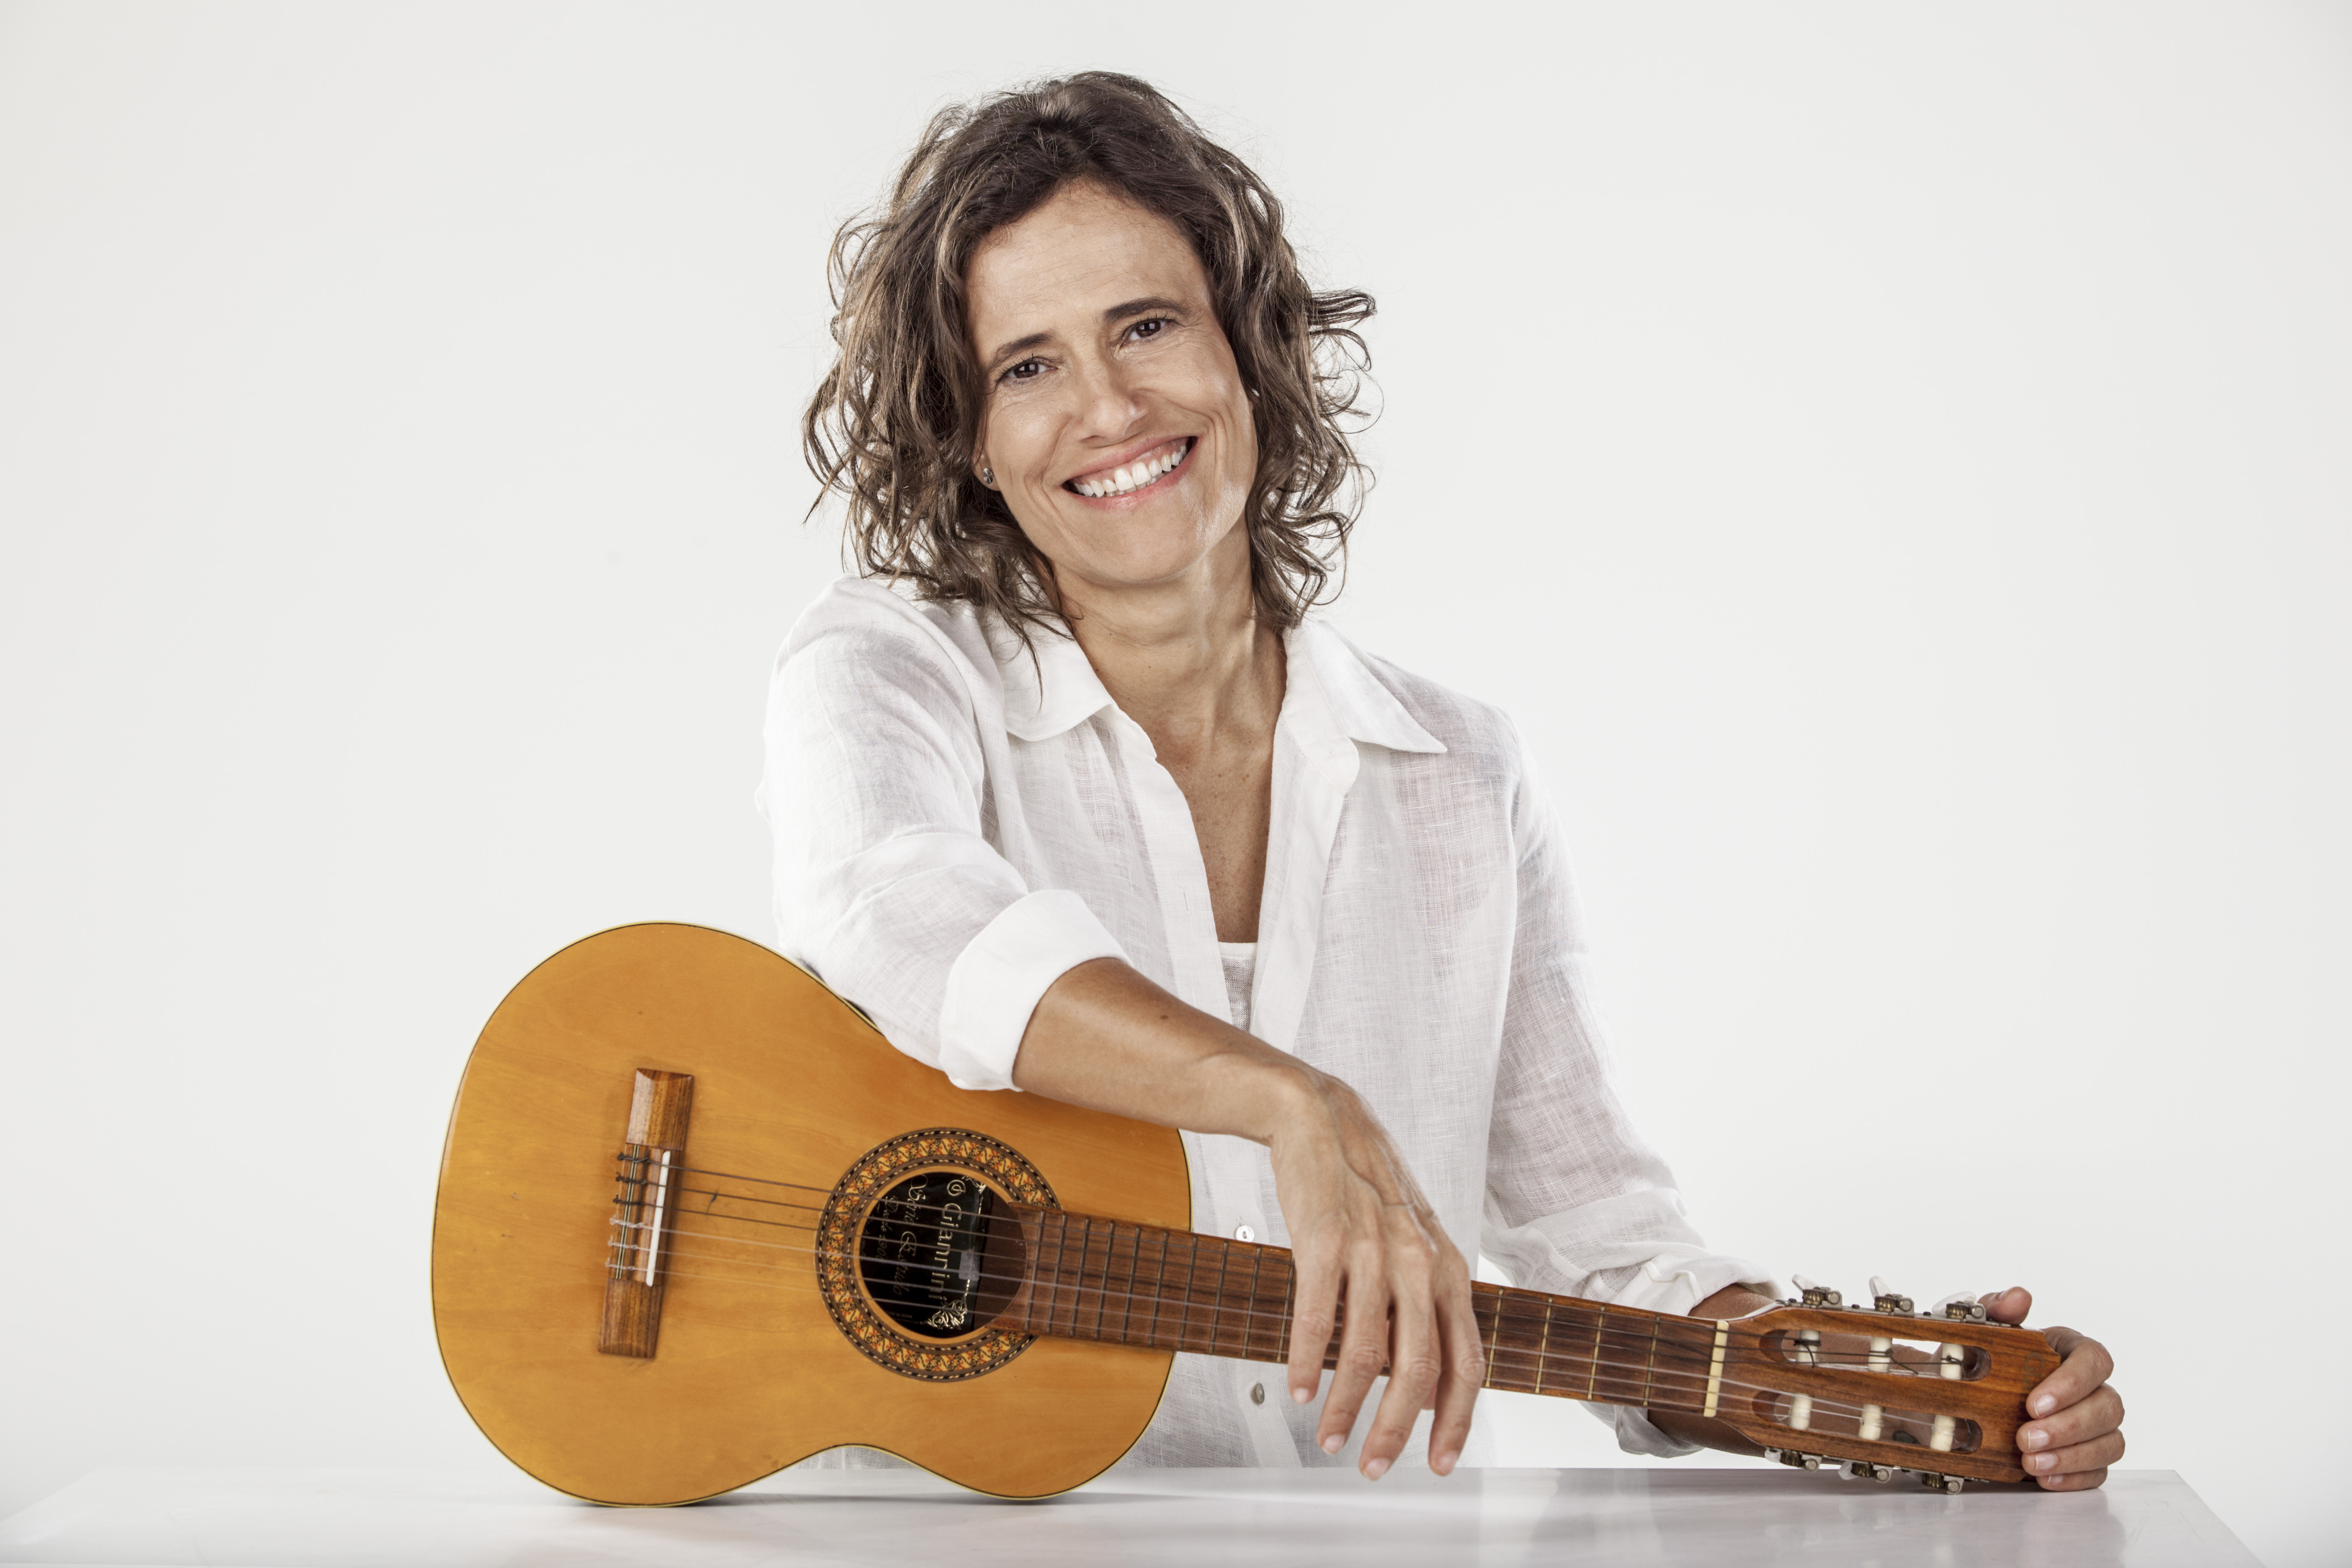 Zélia Duncan apresenta no Piauí o show “O lado bom da solidão”.